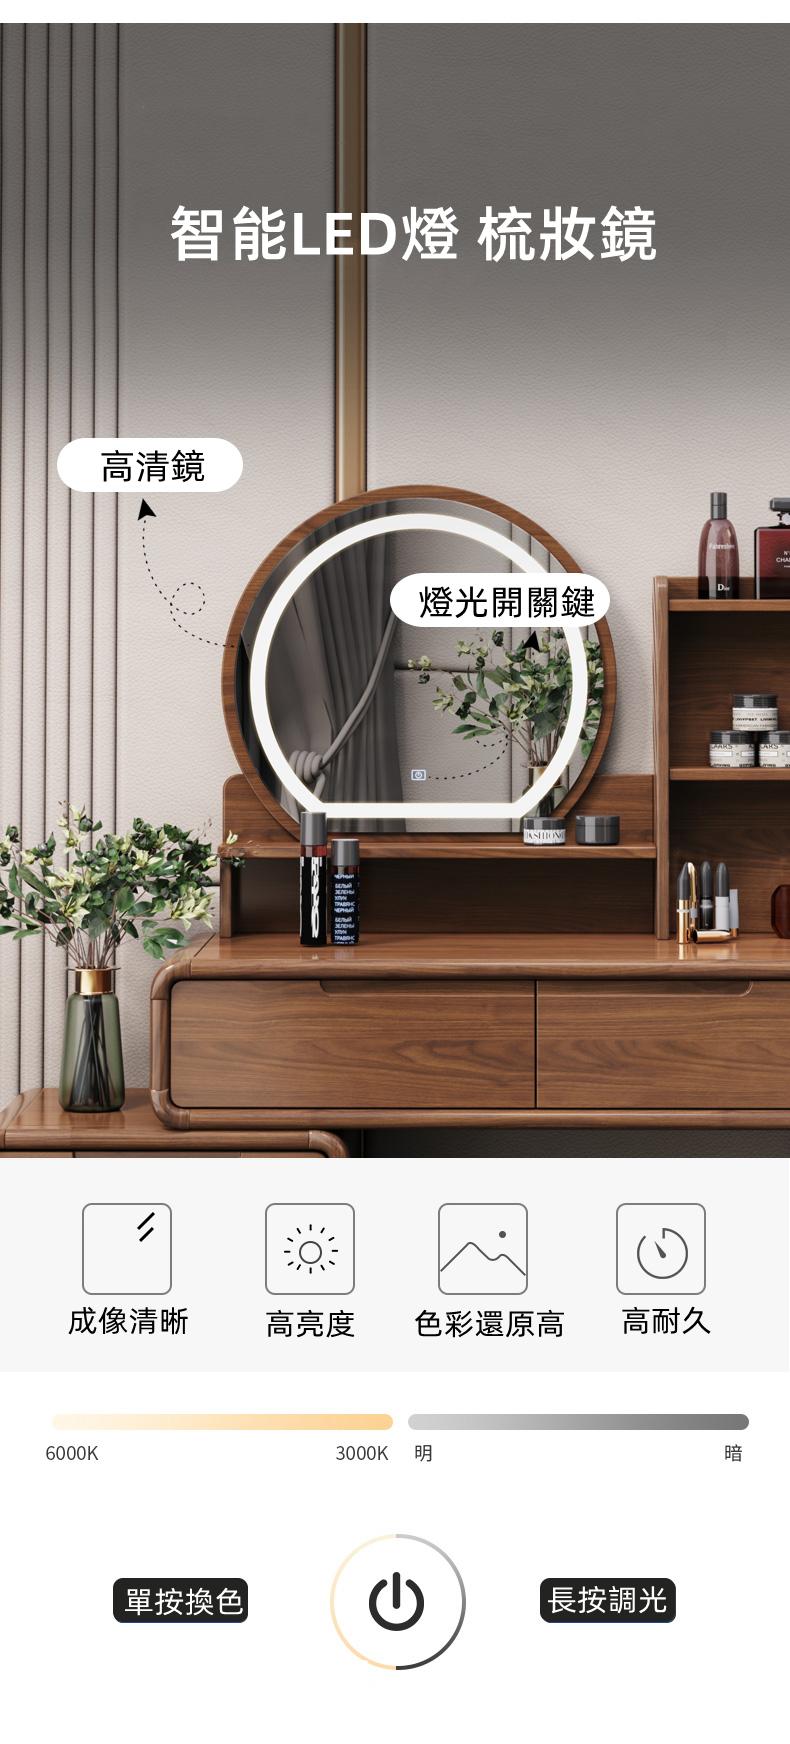 新中式 實木收納 伸縮梳妝台(圓鏡)連梳妝櫈 80cm/90cm(IS8109)